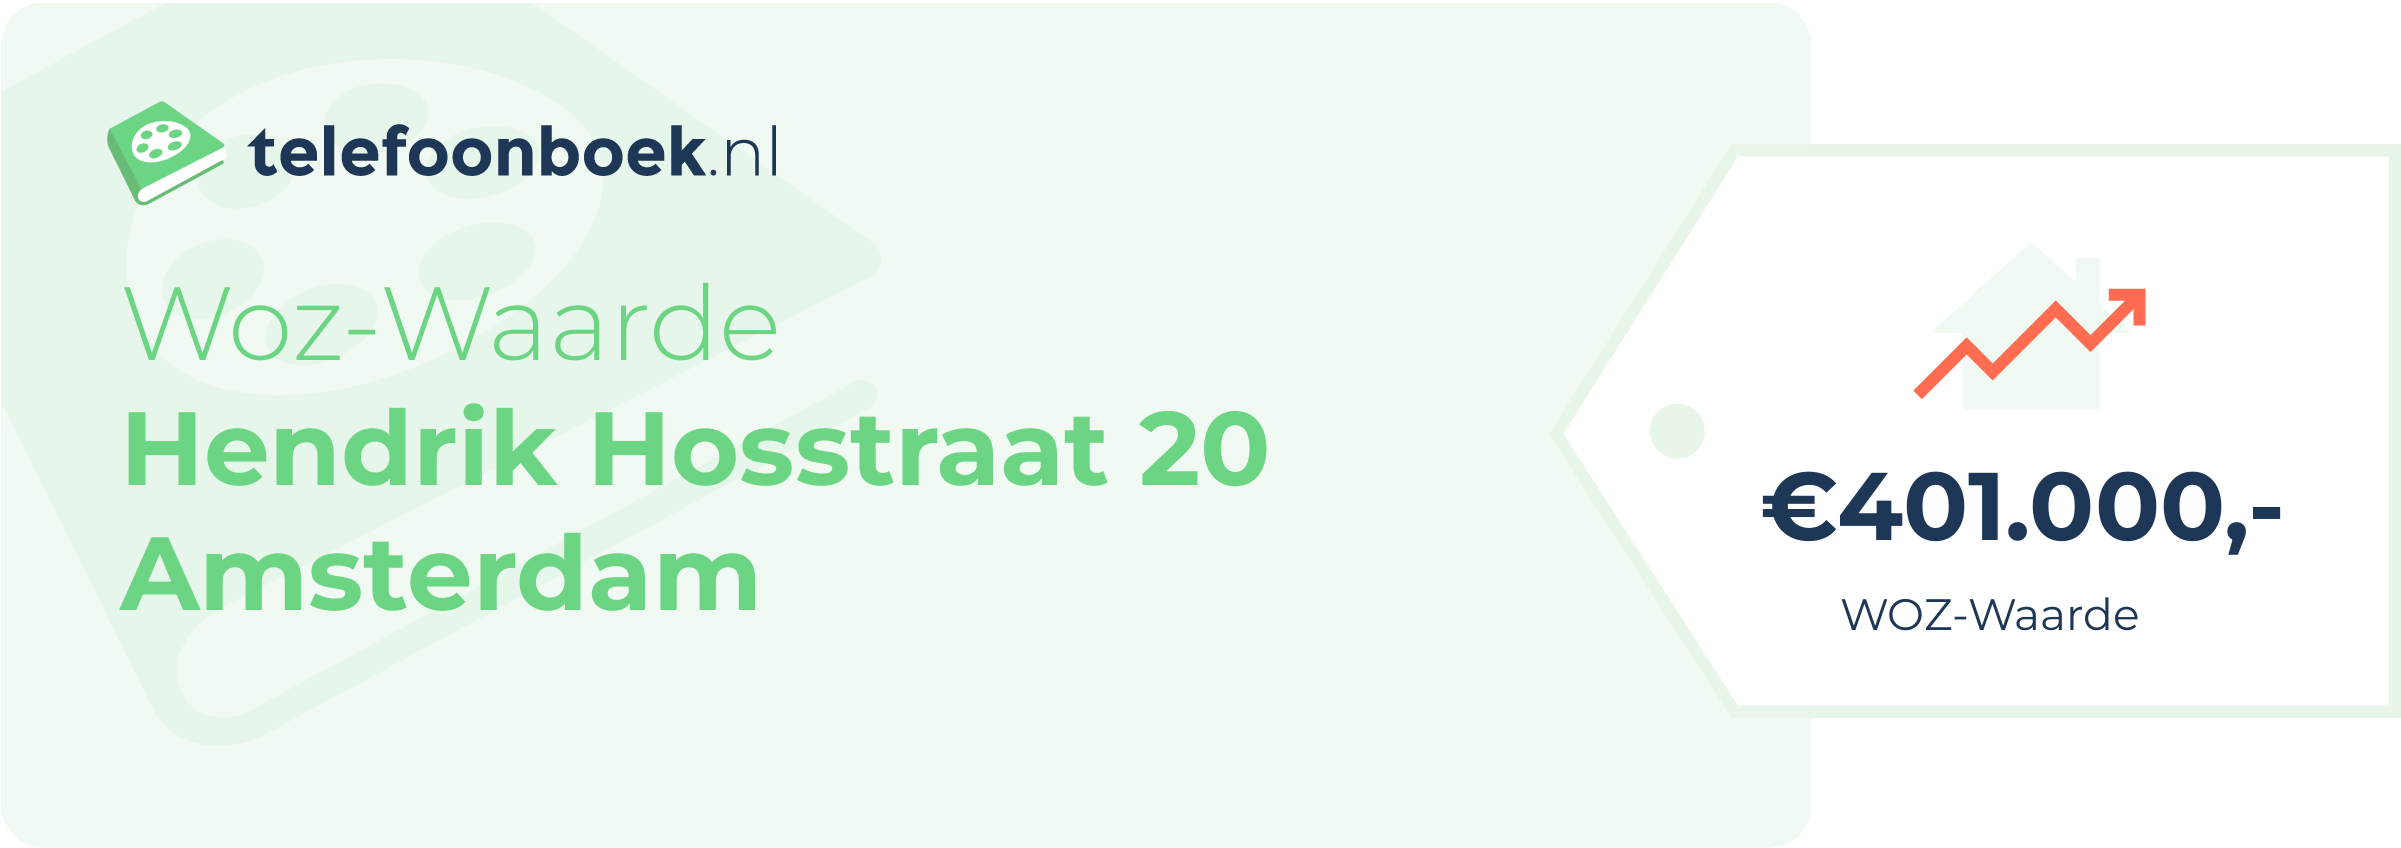 WOZ-waarde Hendrik Hosstraat 20 Amsterdam